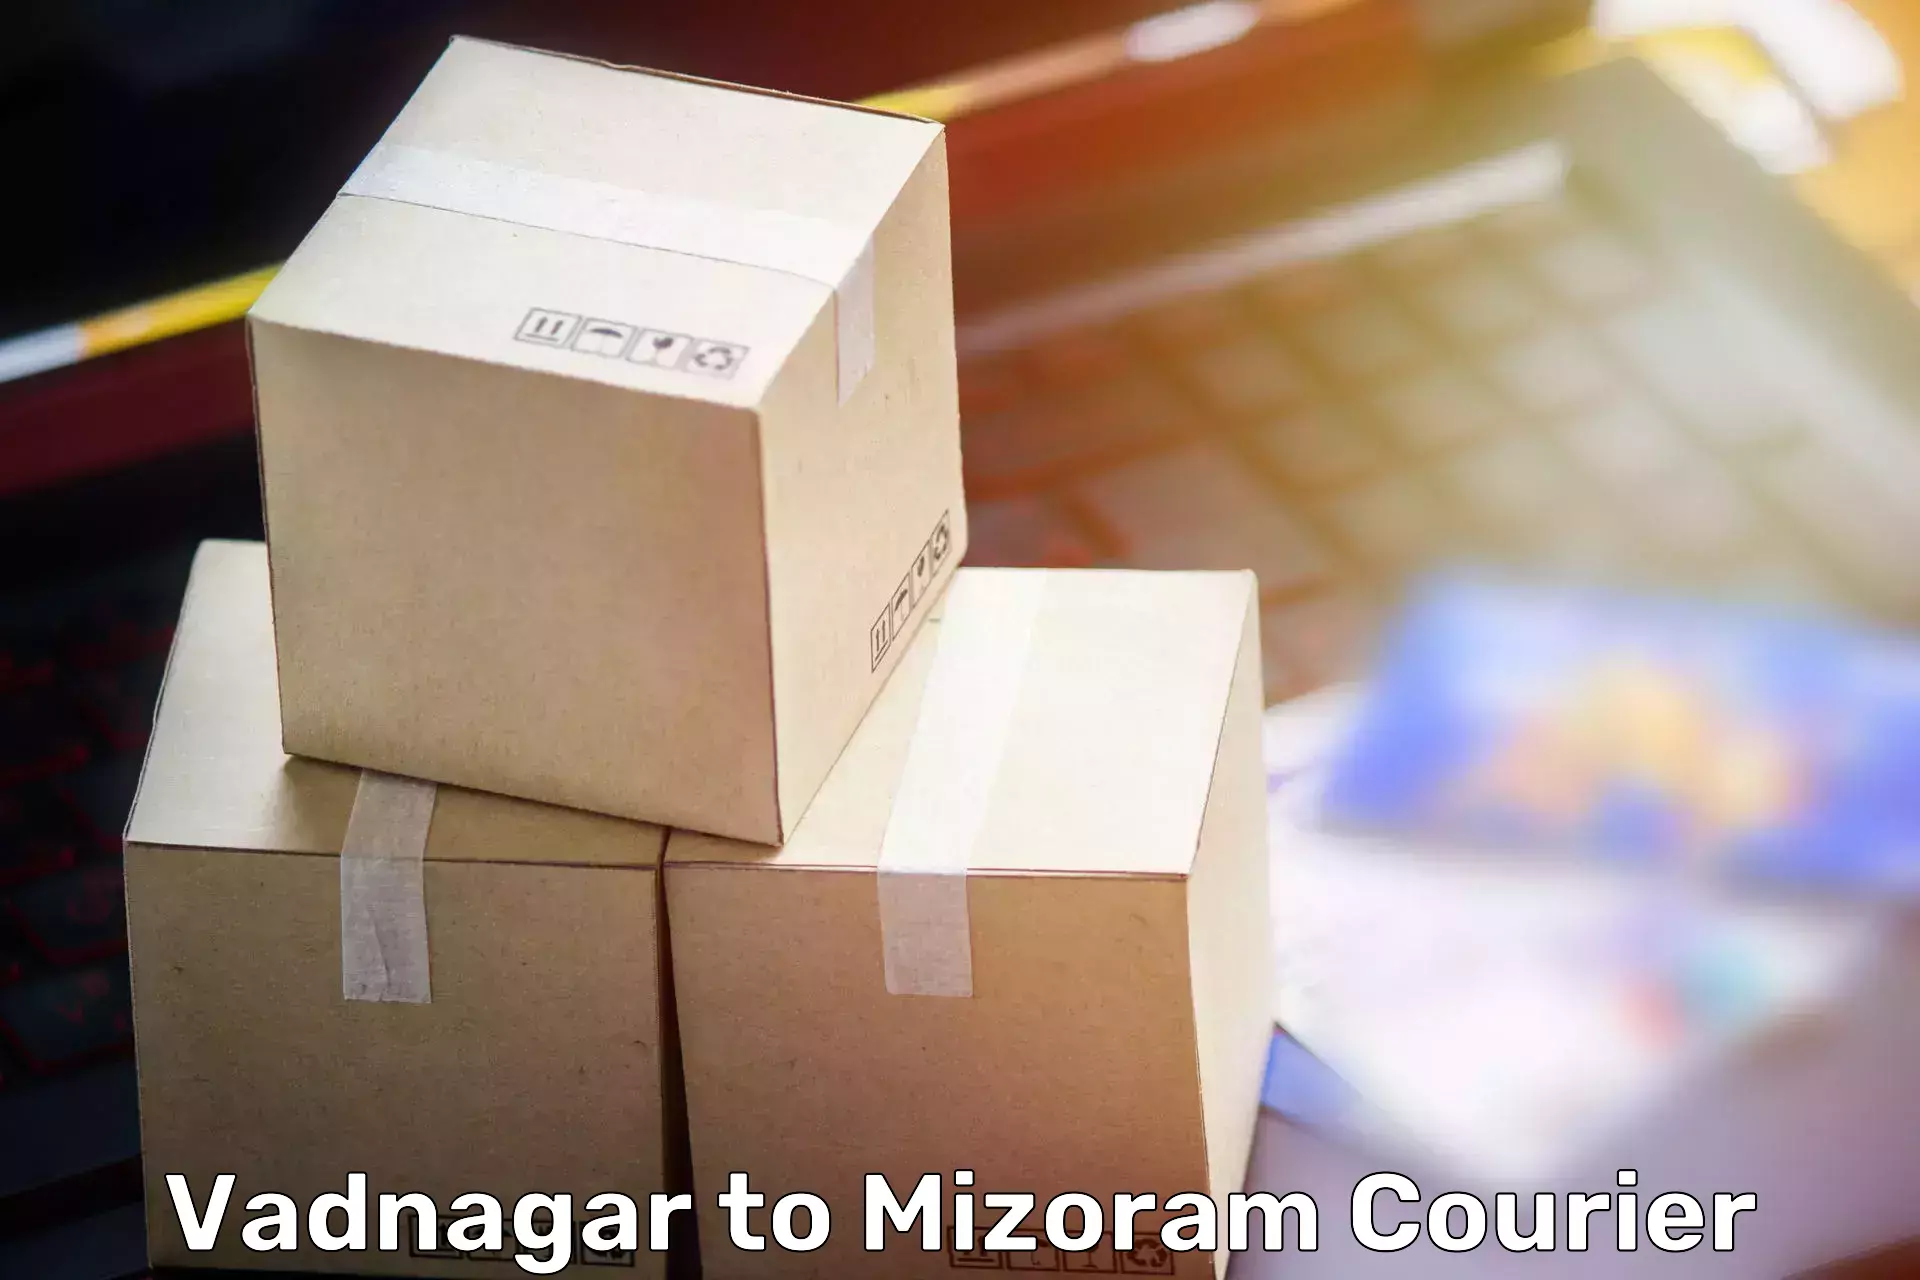 Home goods moving company Vadnagar to Mizoram